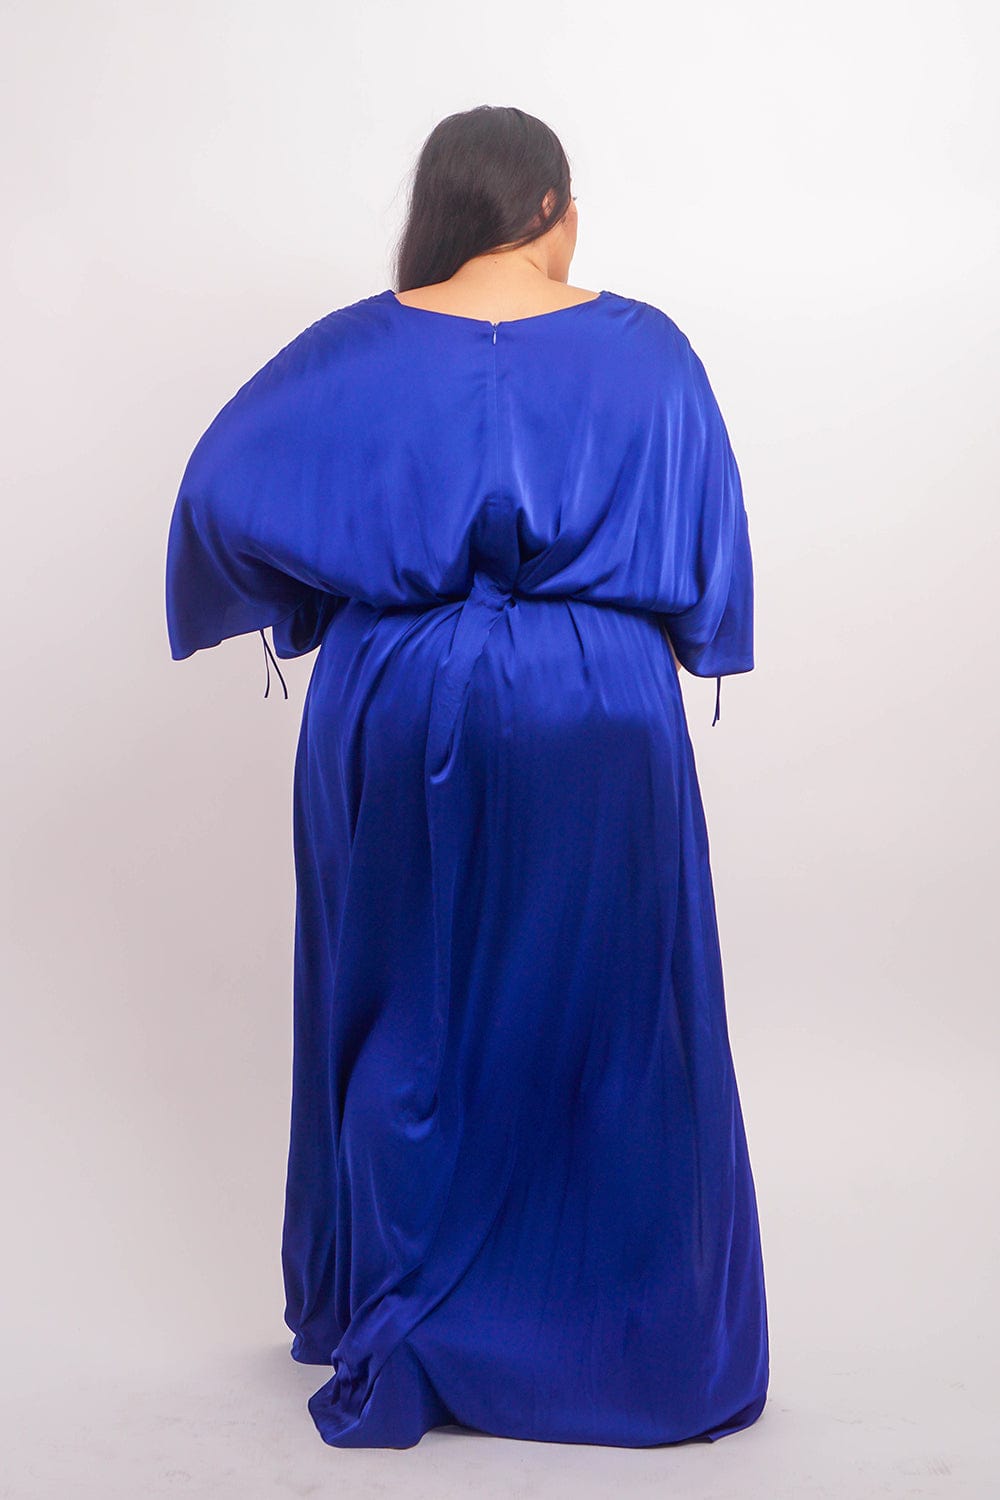 Chloe Dao DRESSES Cobalt Satin Kasumi Maxi Dress